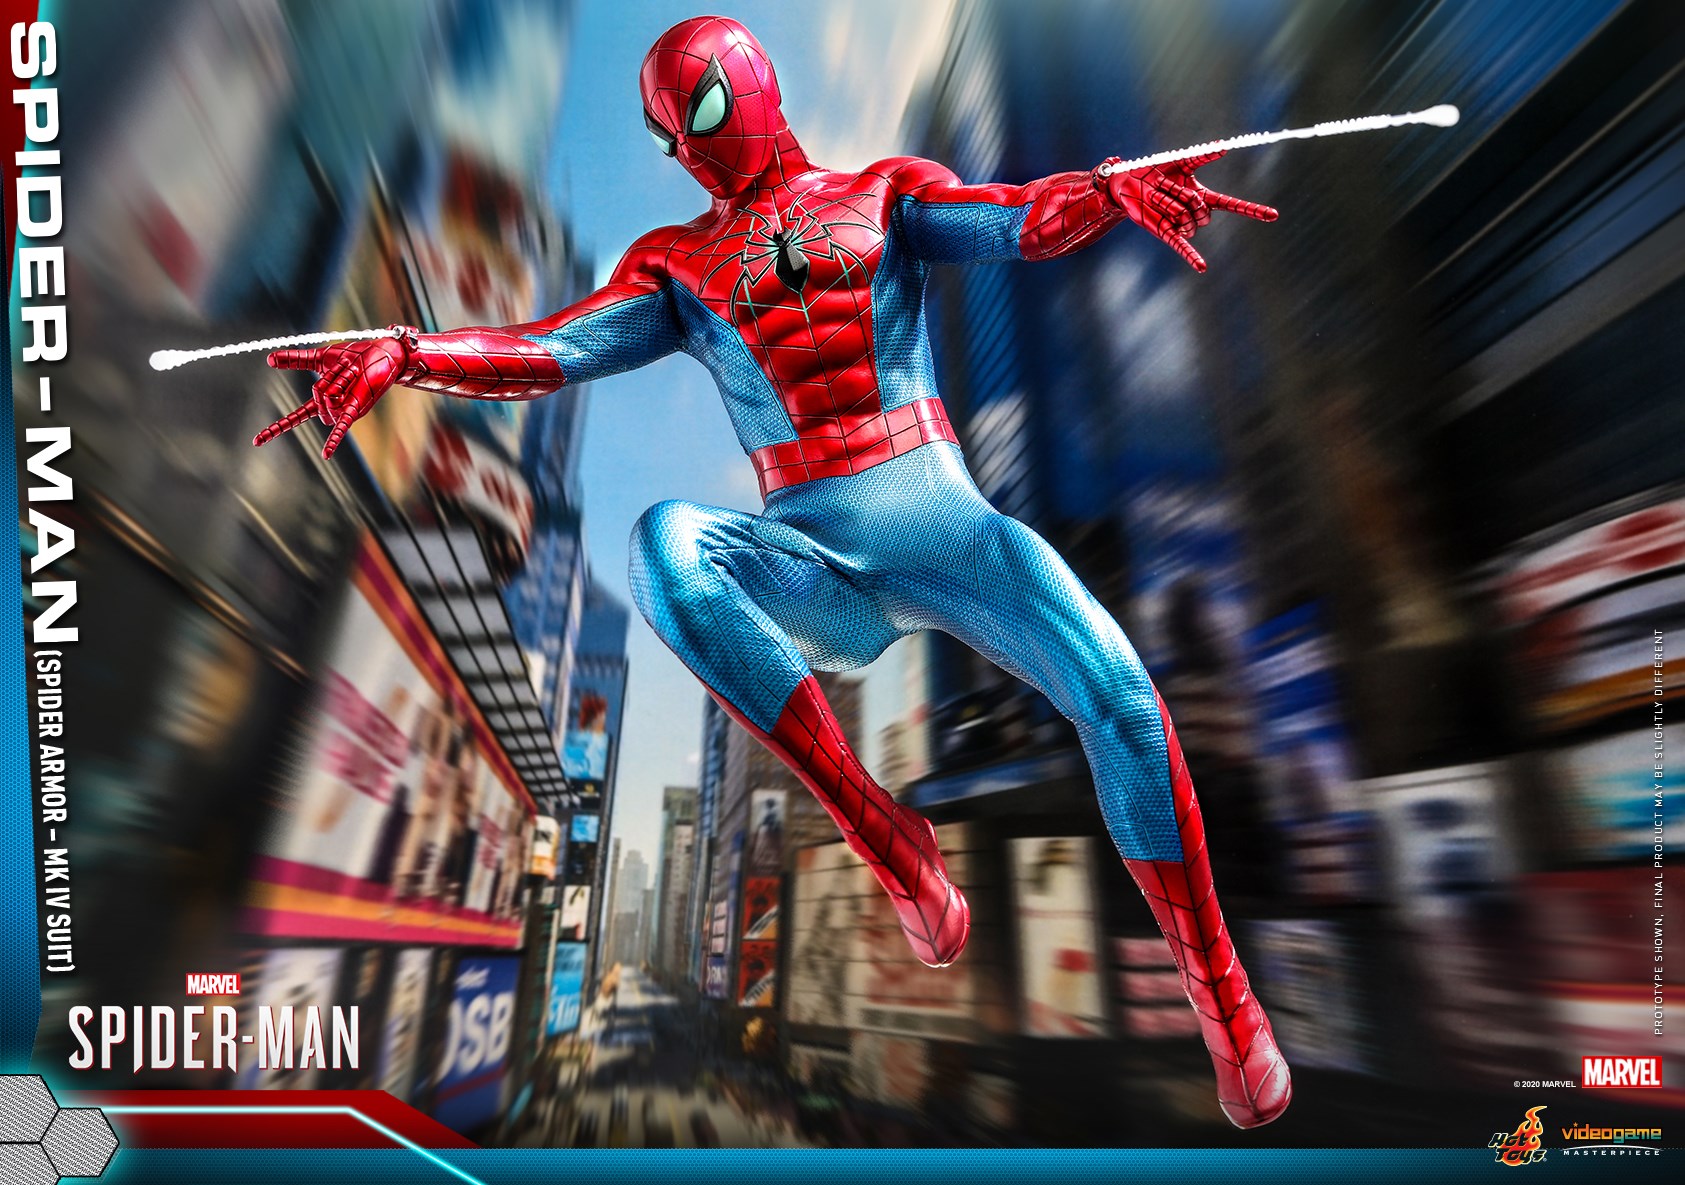 Hot Toys - VGM43 - Marvel&#39;s Spider-Man (PS4) - Spider-Man (Spider Armor - MK IV Suit) - Marvelous Toys